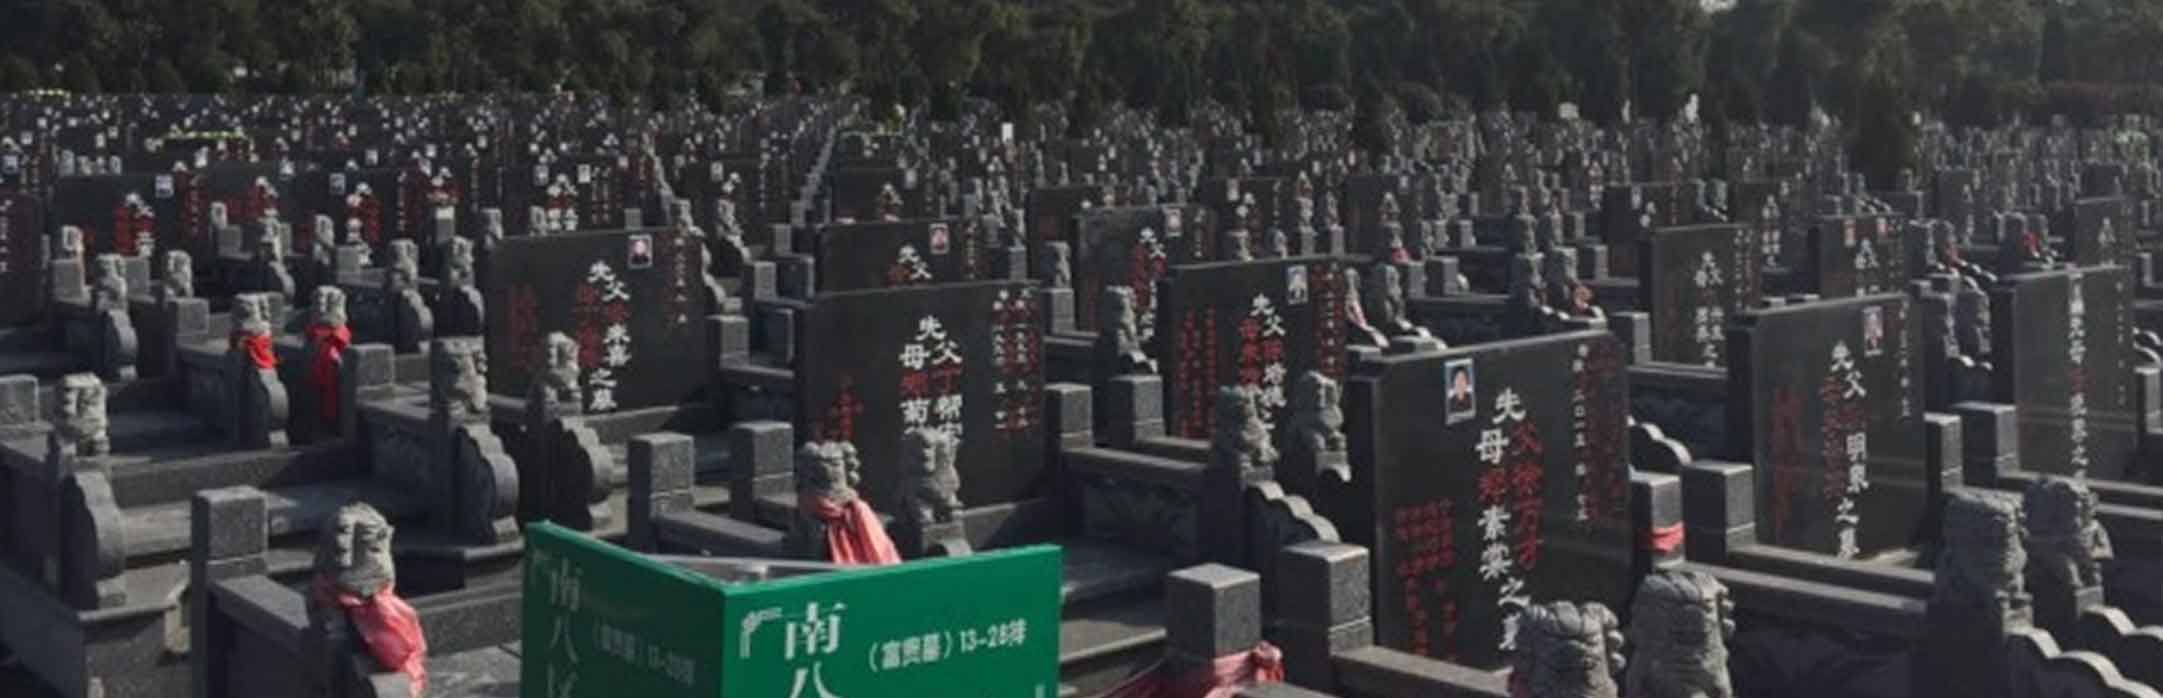 镇江横山凹公墓